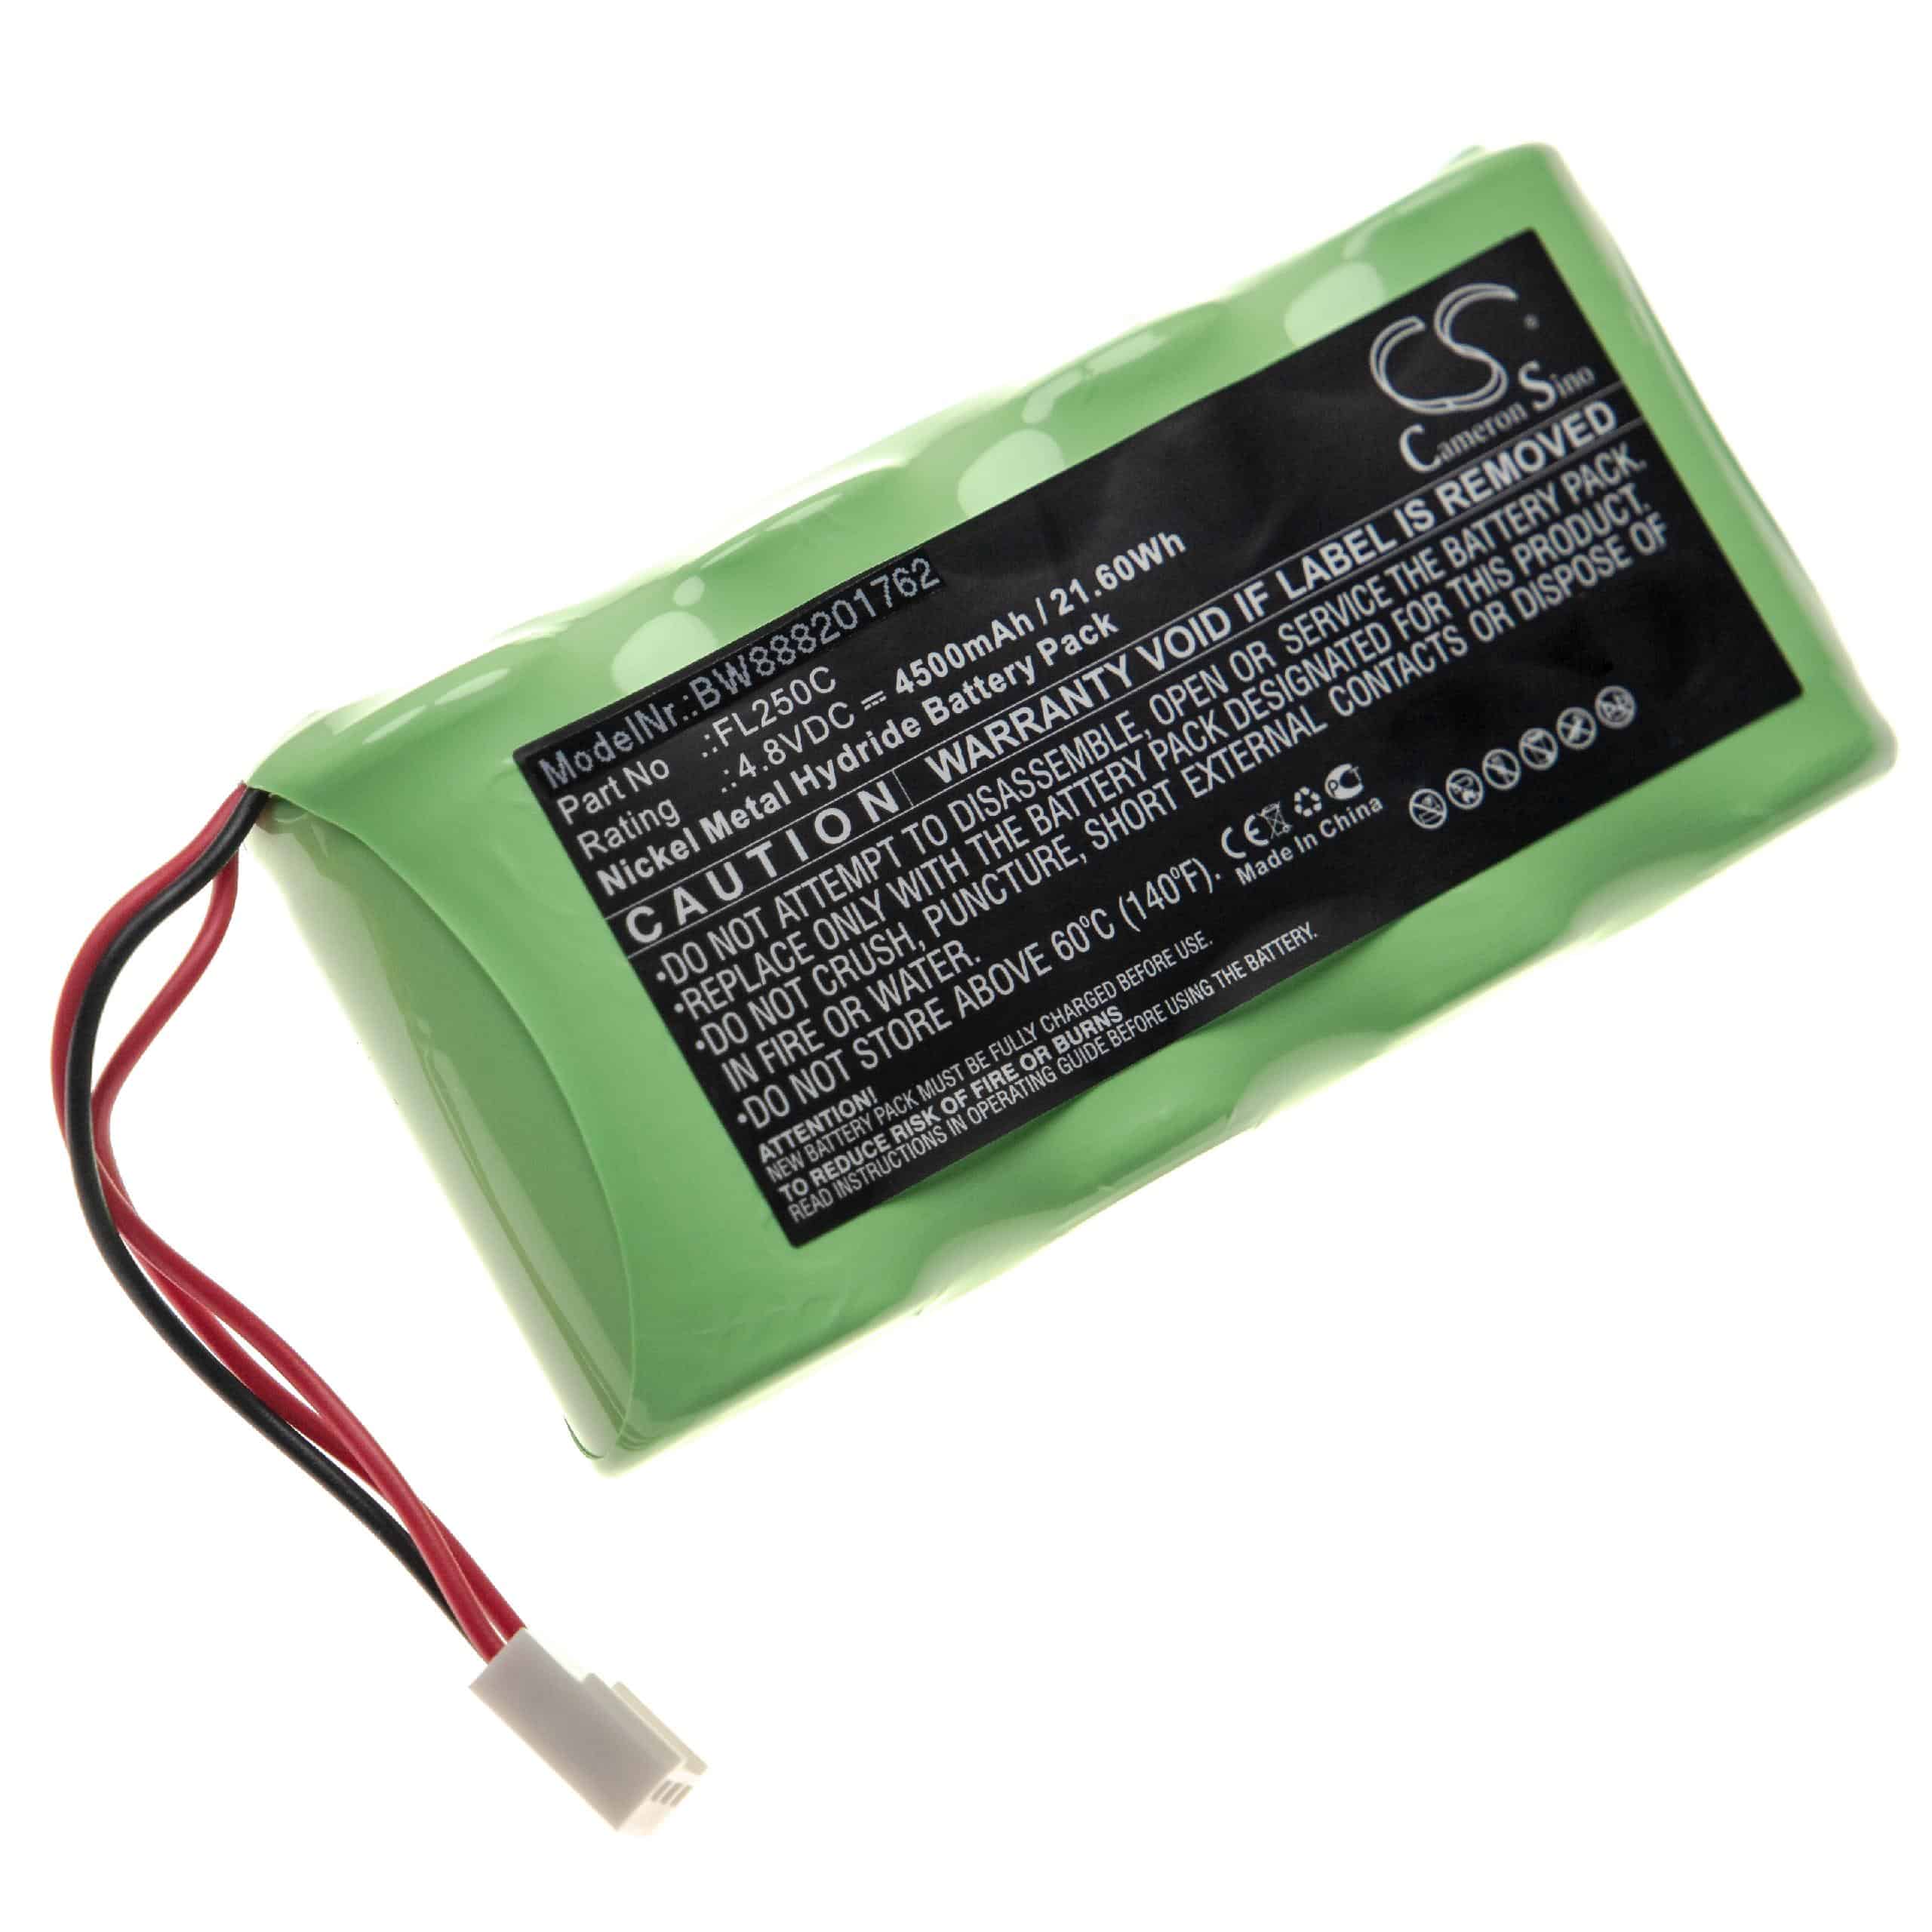 Batterie remplace Metland FL250C pour outil de mesure - 4500mAh 4,8V NiMH